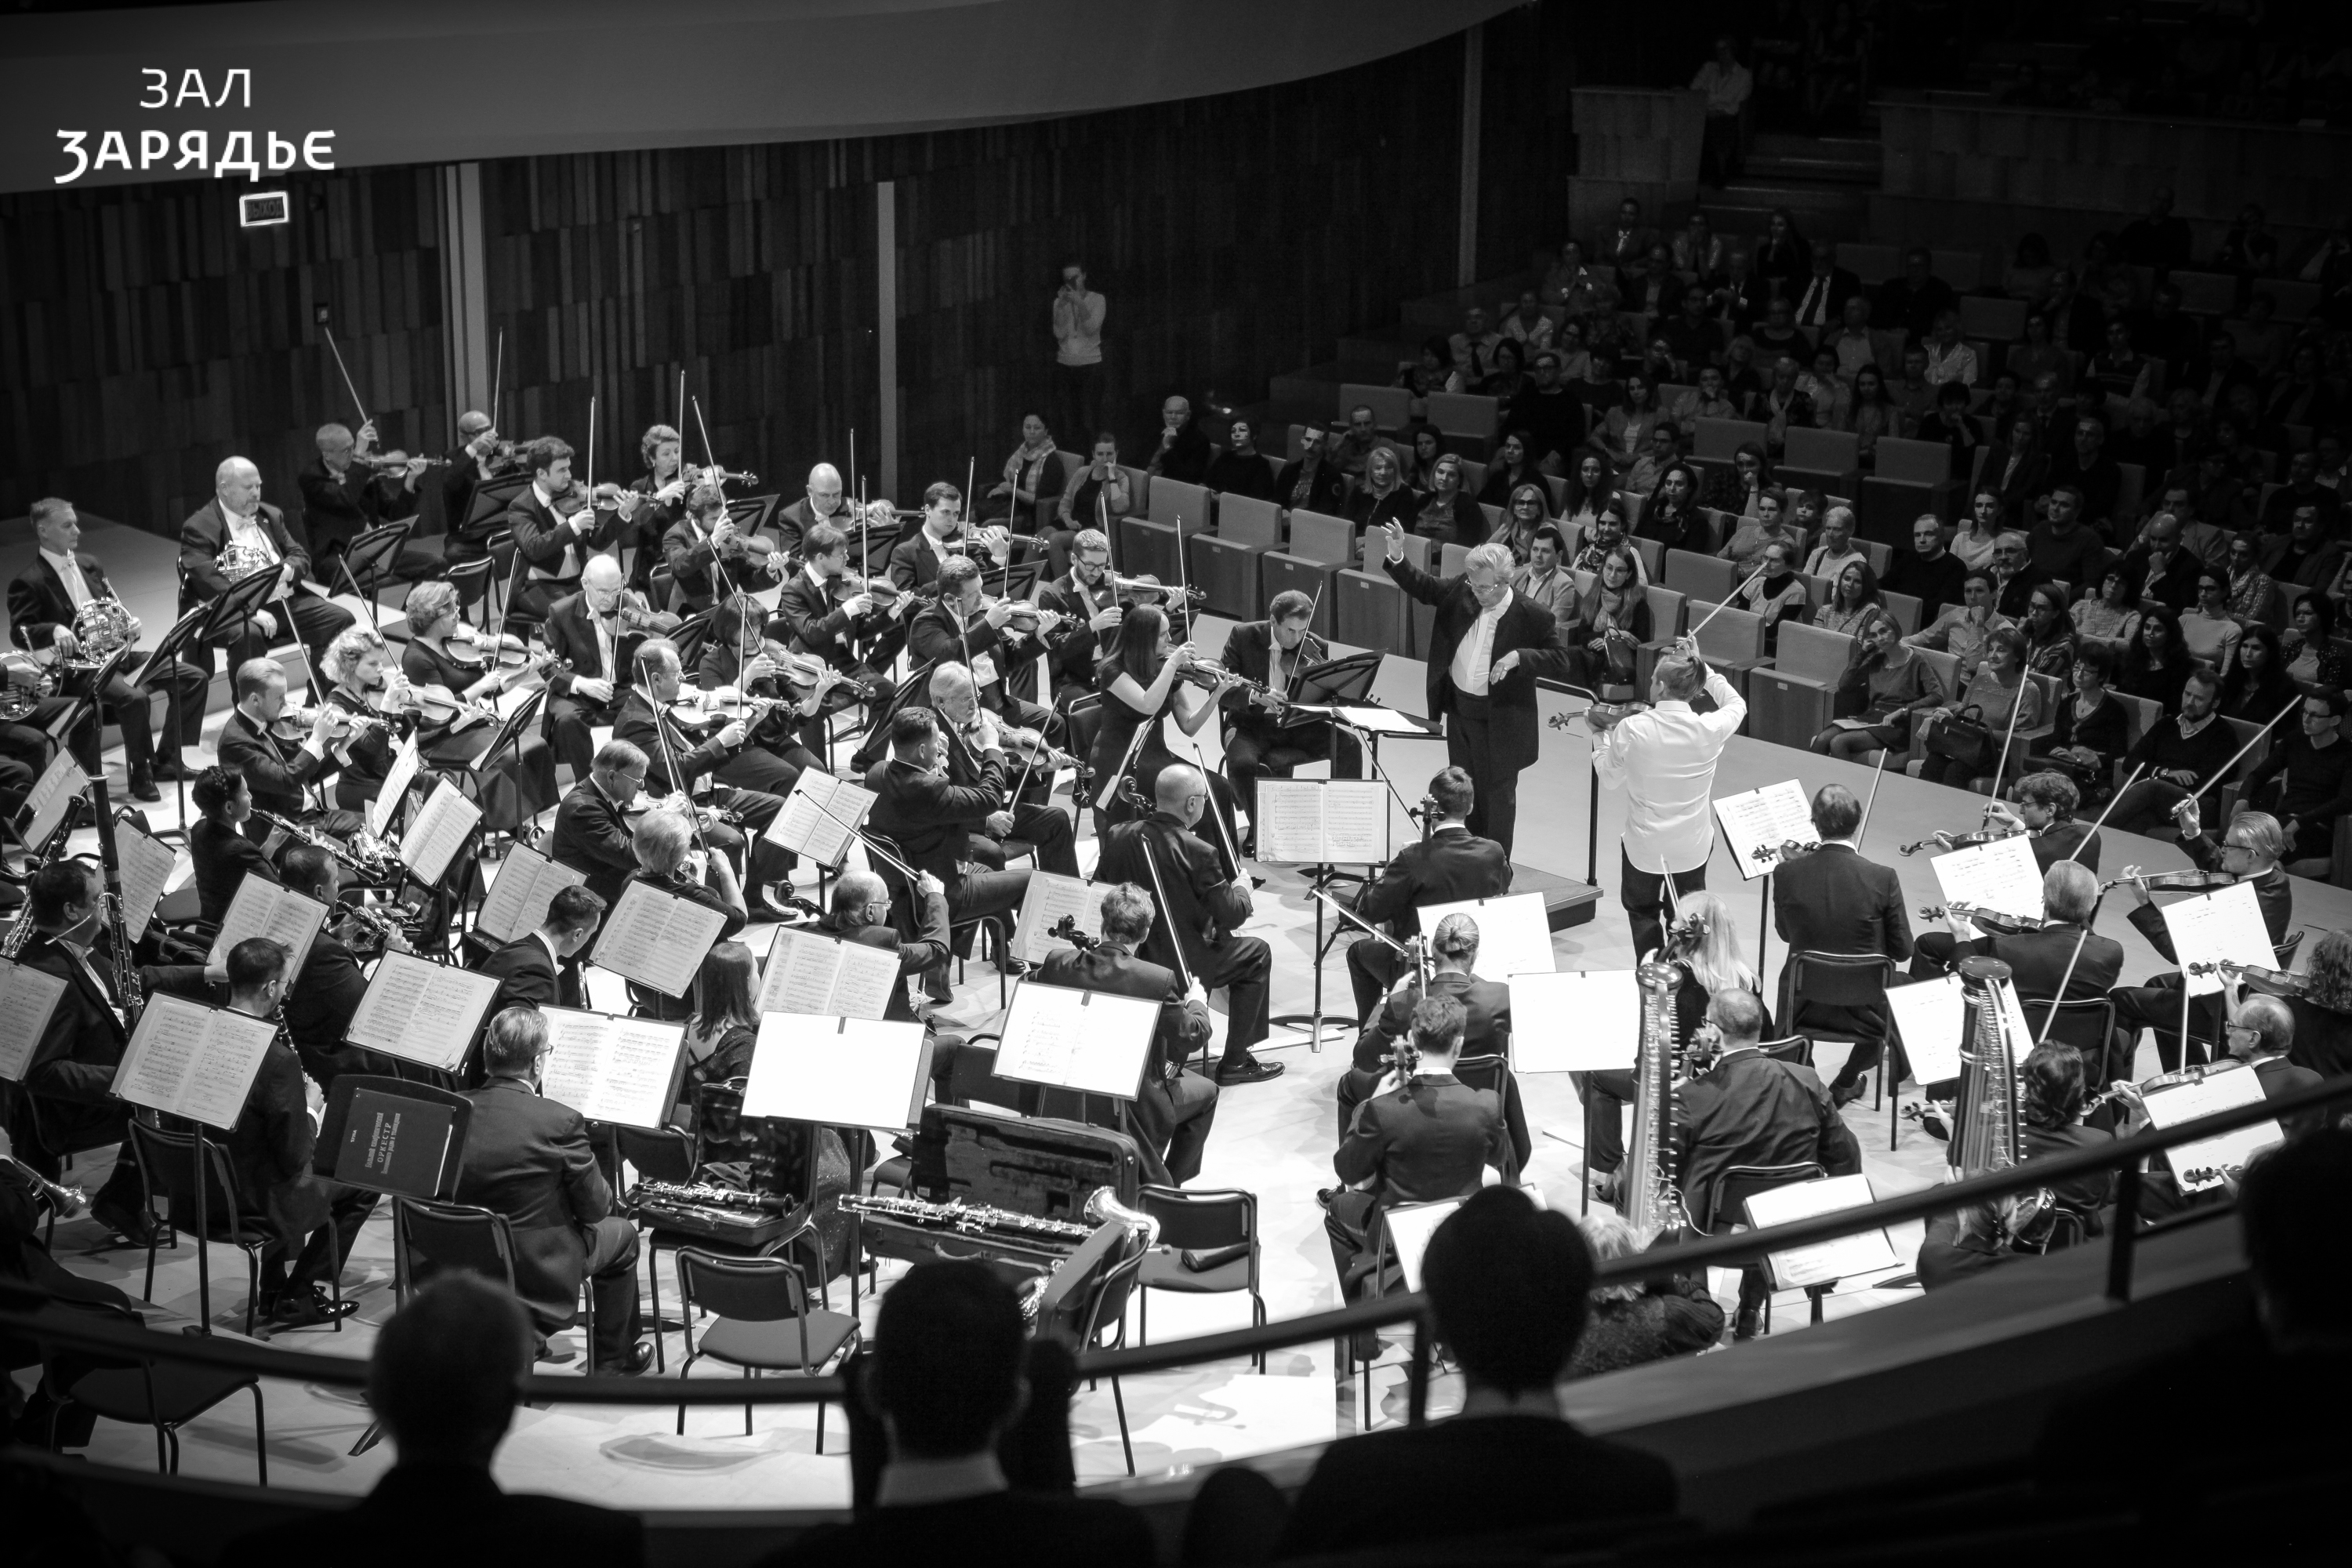 Tchaikovsky Symphony Orchestra. Javier Bonet, French horn